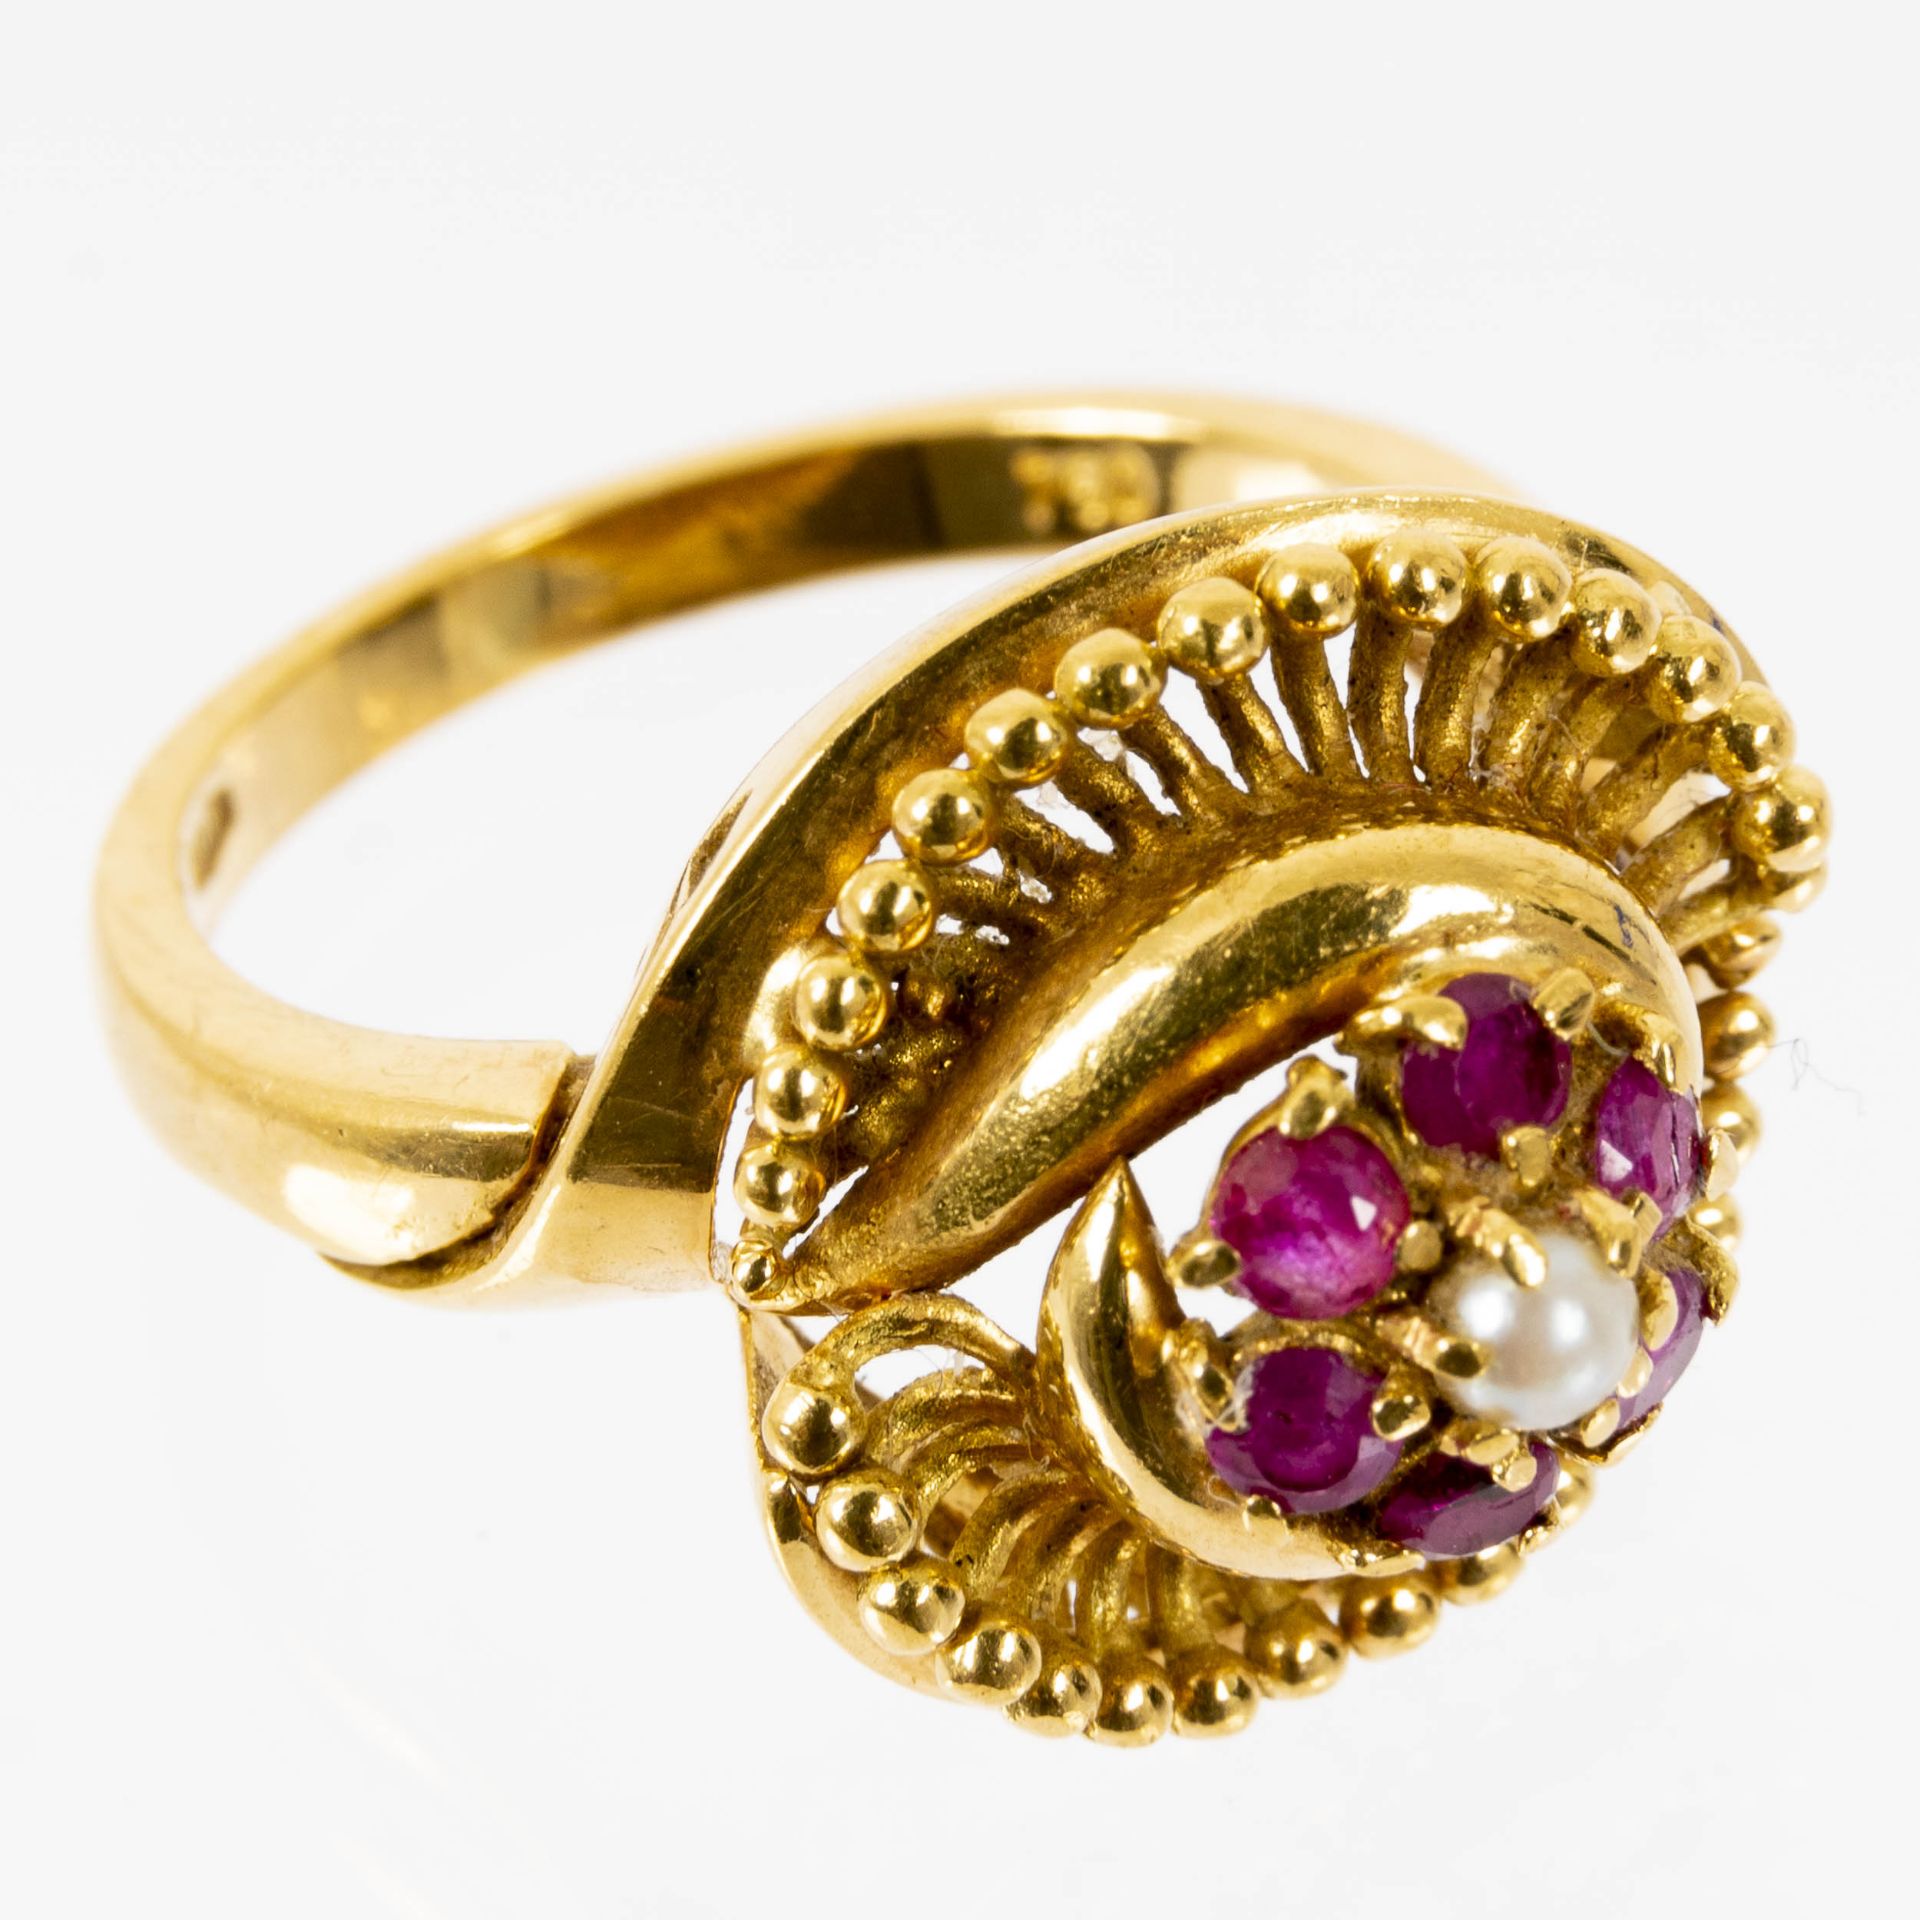 Prächtiger blütenförmiger 18K Gelbgold-Ring mittig mit Perle besetzt und von Rubinsplitterbesatz um